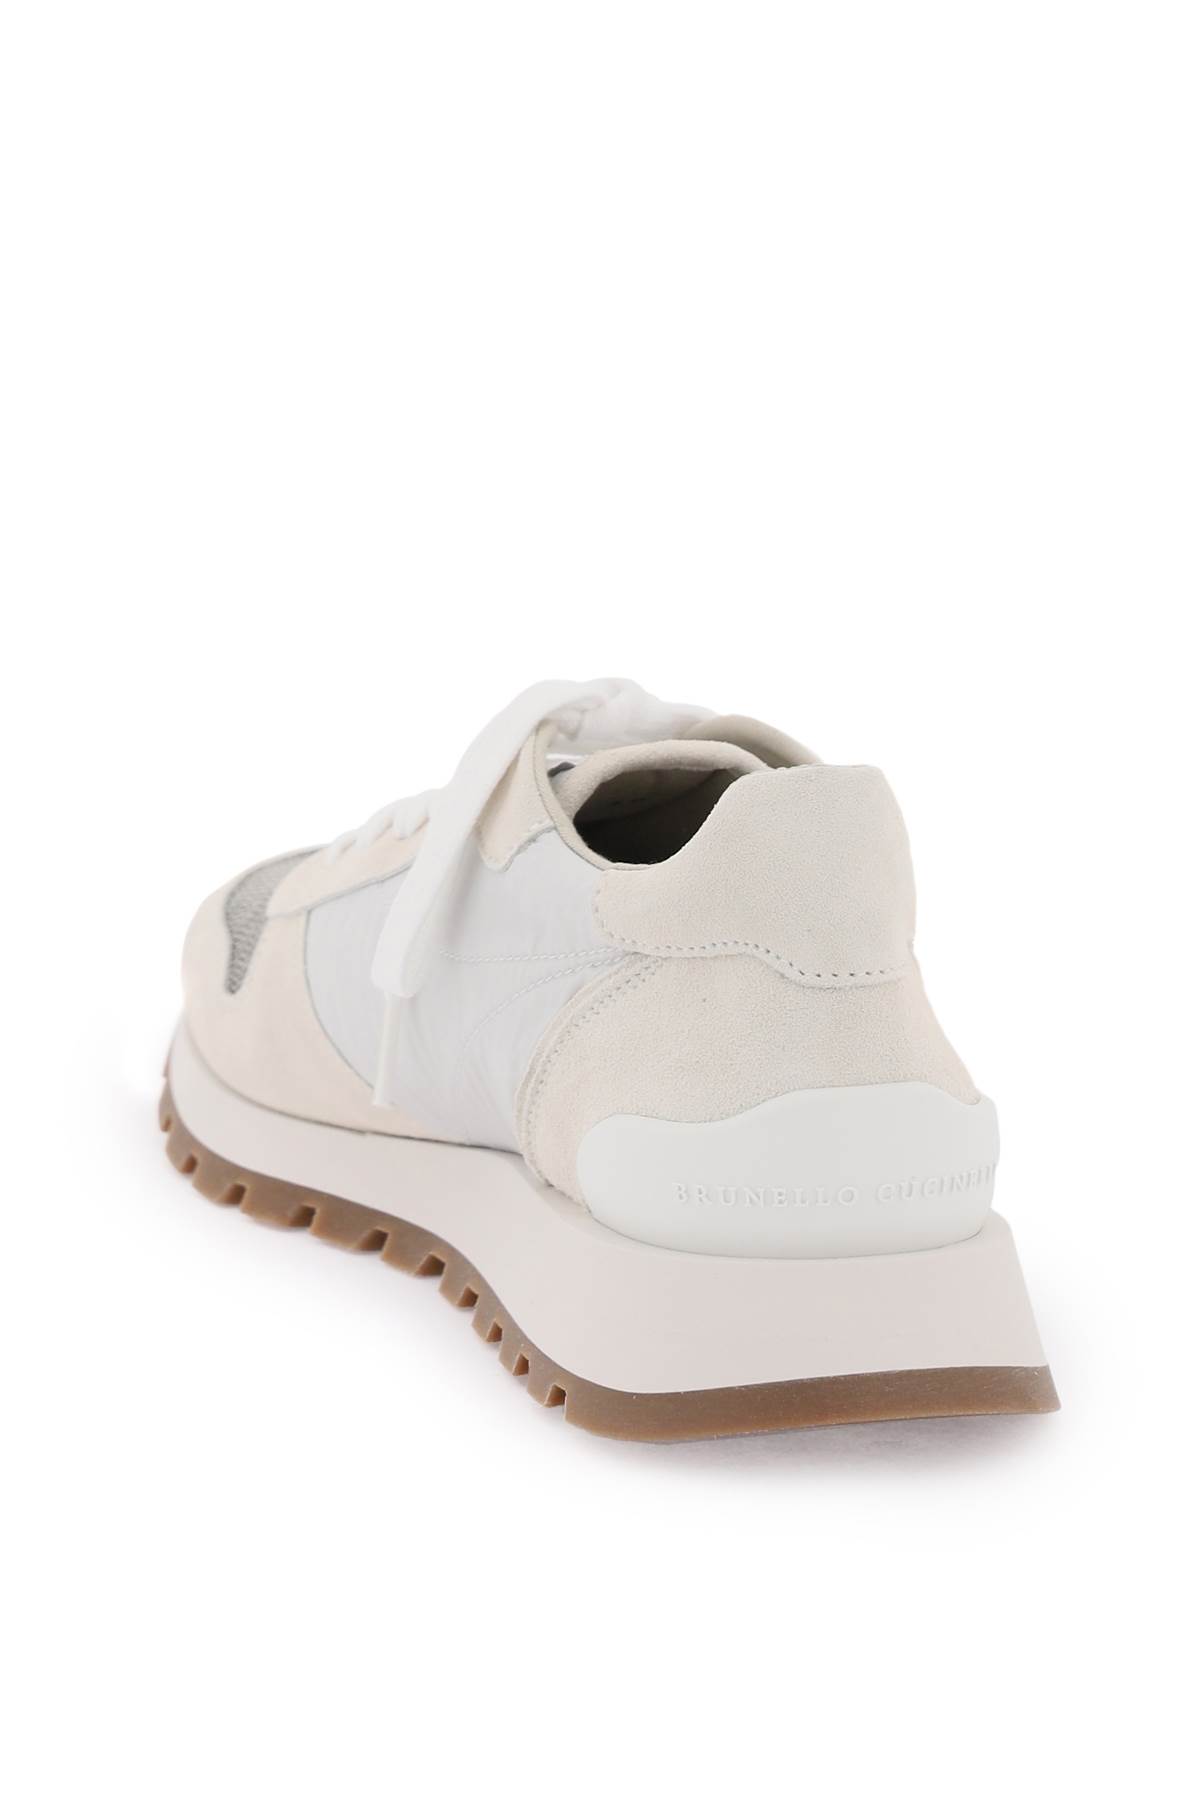 Shop Brunello Cucinelli Sneakers With Monili Toe In White